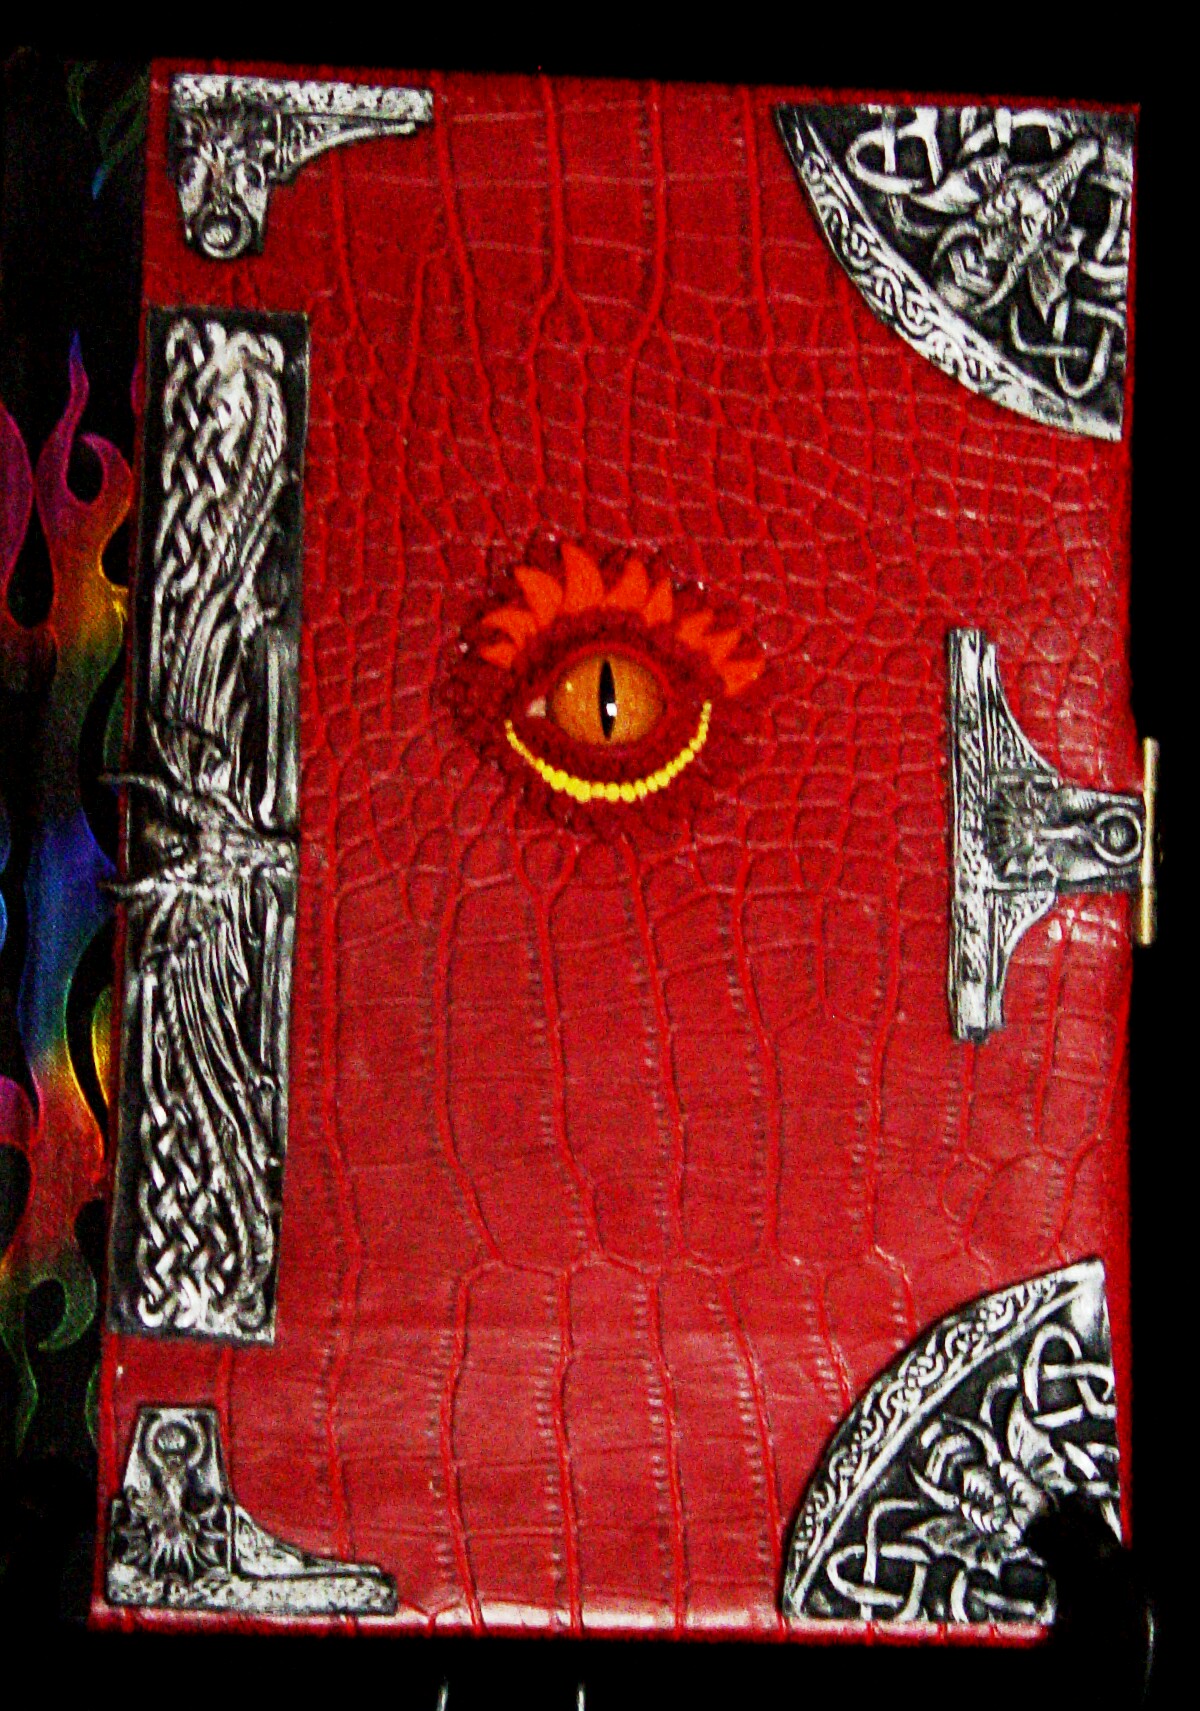 kodack red Dragon book.jpg?1344394892170